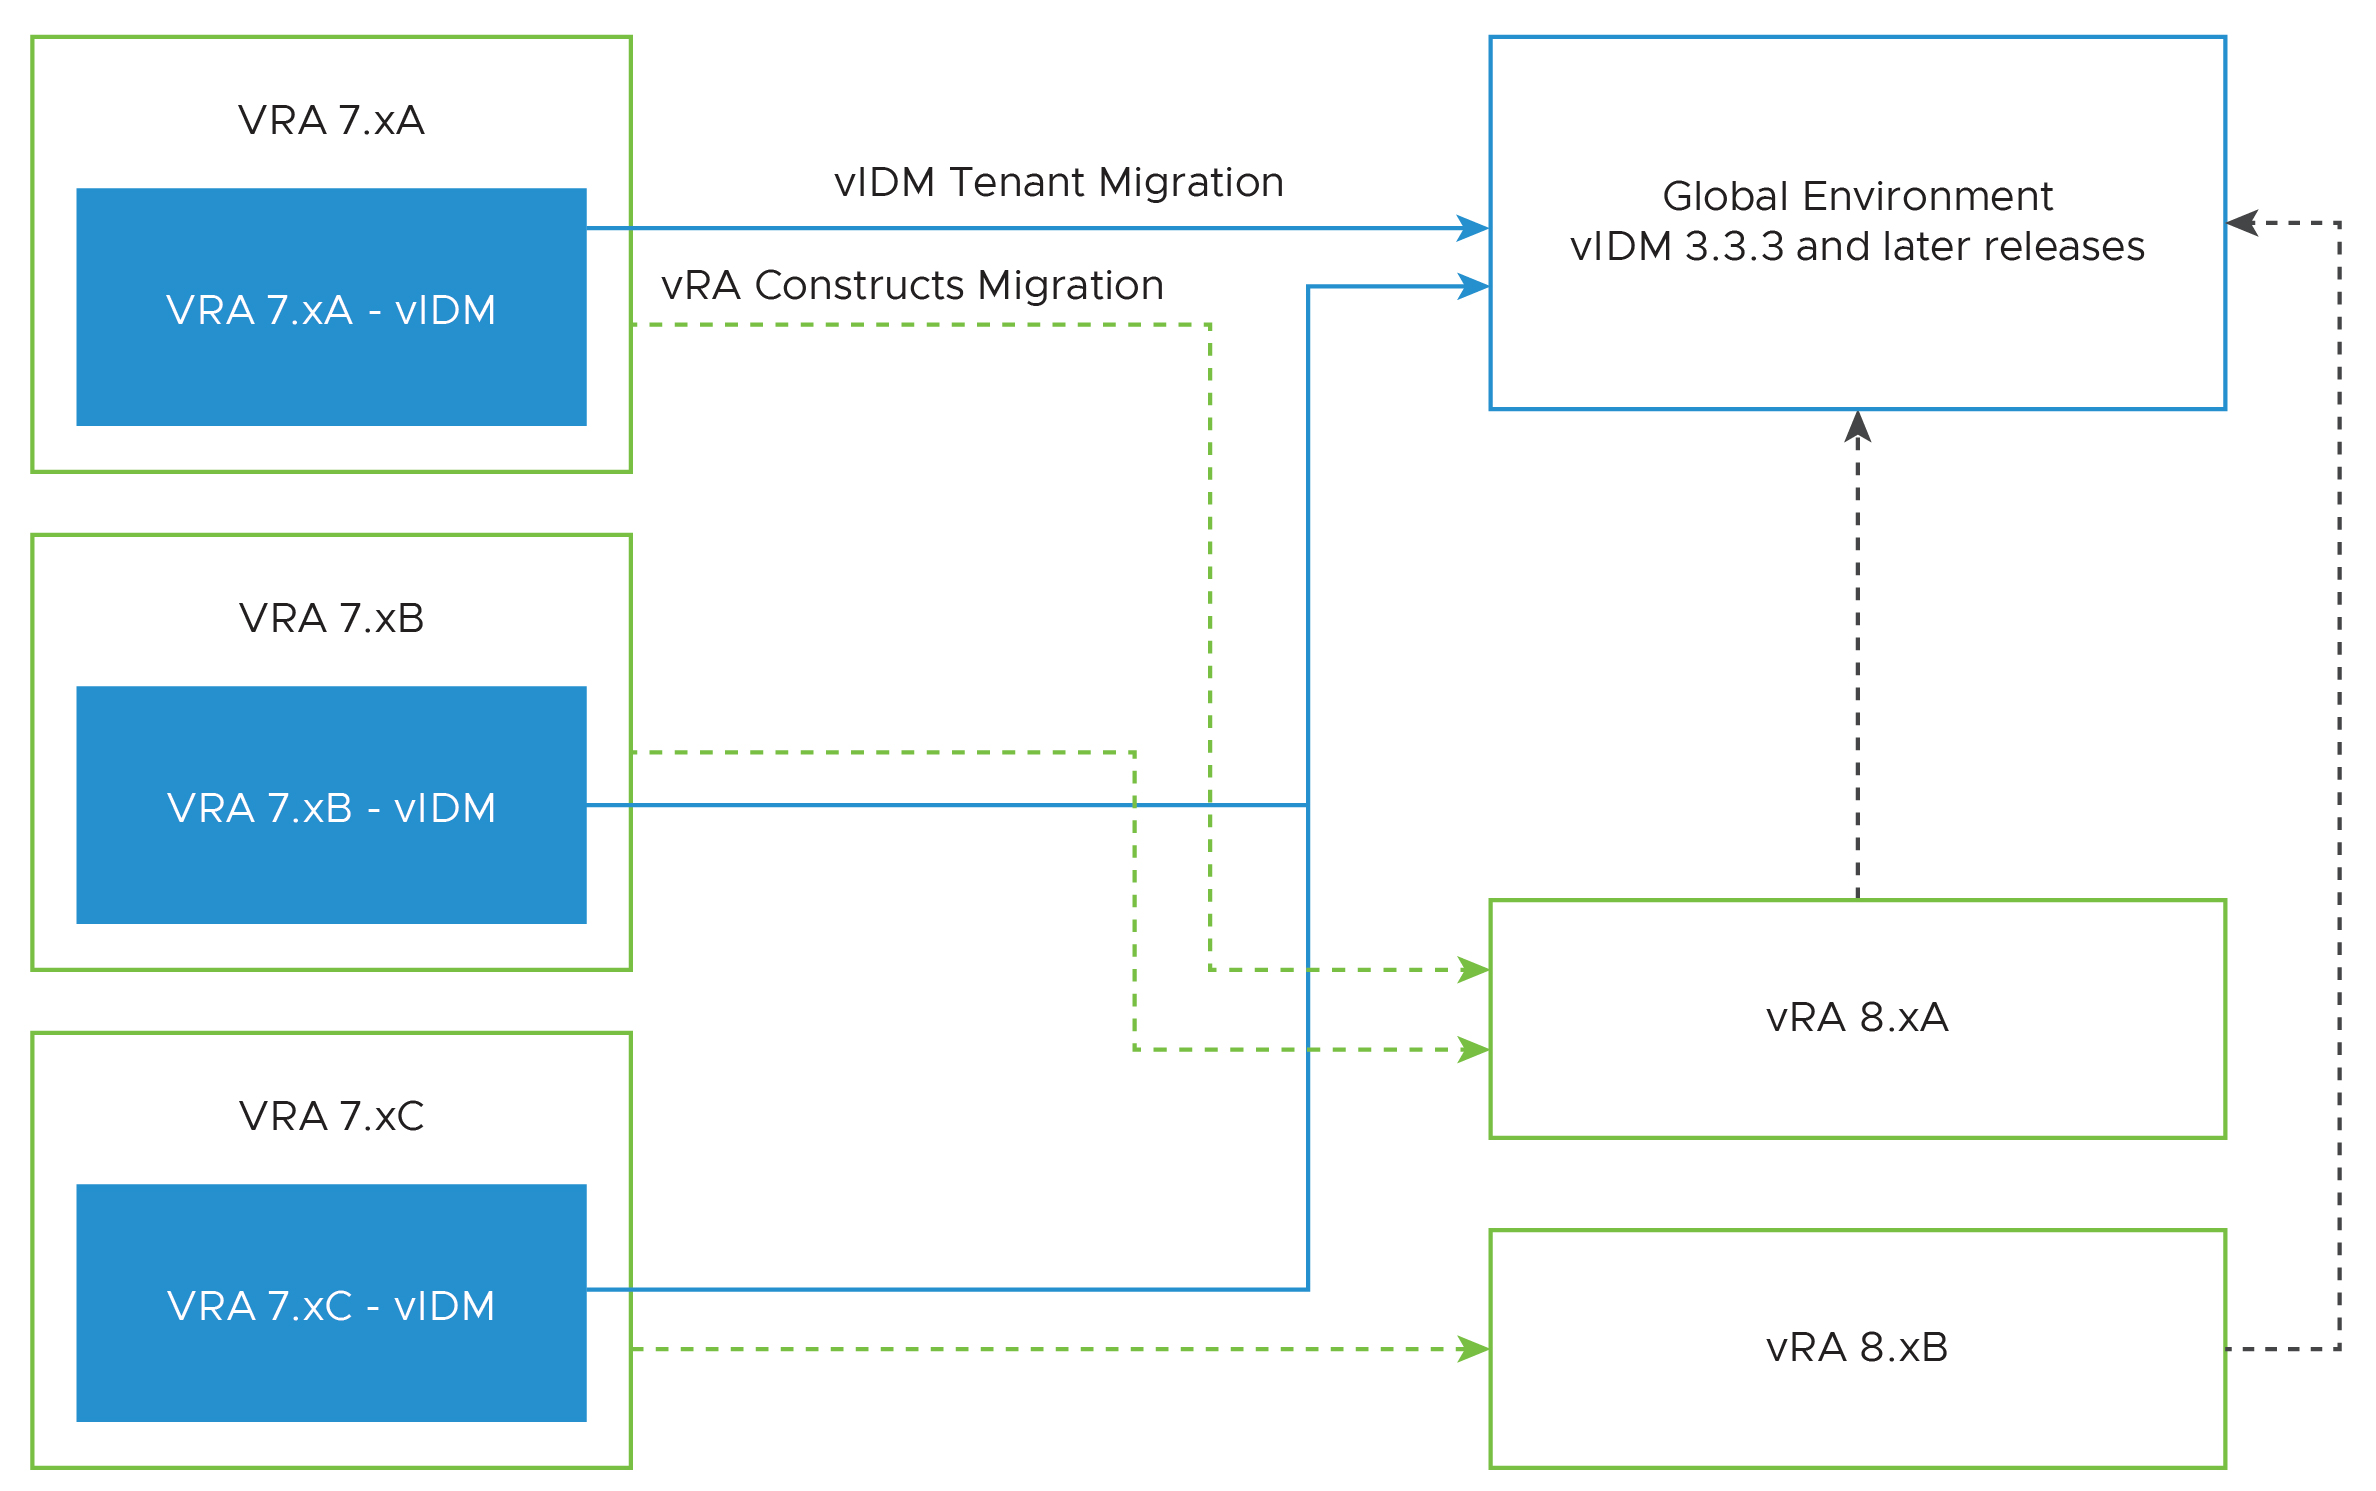 此圖顯示如何使用 VMware Aria Suite Lifecycle 移轉承租人。vRA 7.x 承租人透過 Workspace One (以前稱為 vIDM) 移轉到全域環境。同時，VMware Aria Automation 透過從 vRA 7.x 承租人建立 8.x 承租人來建構移轉。